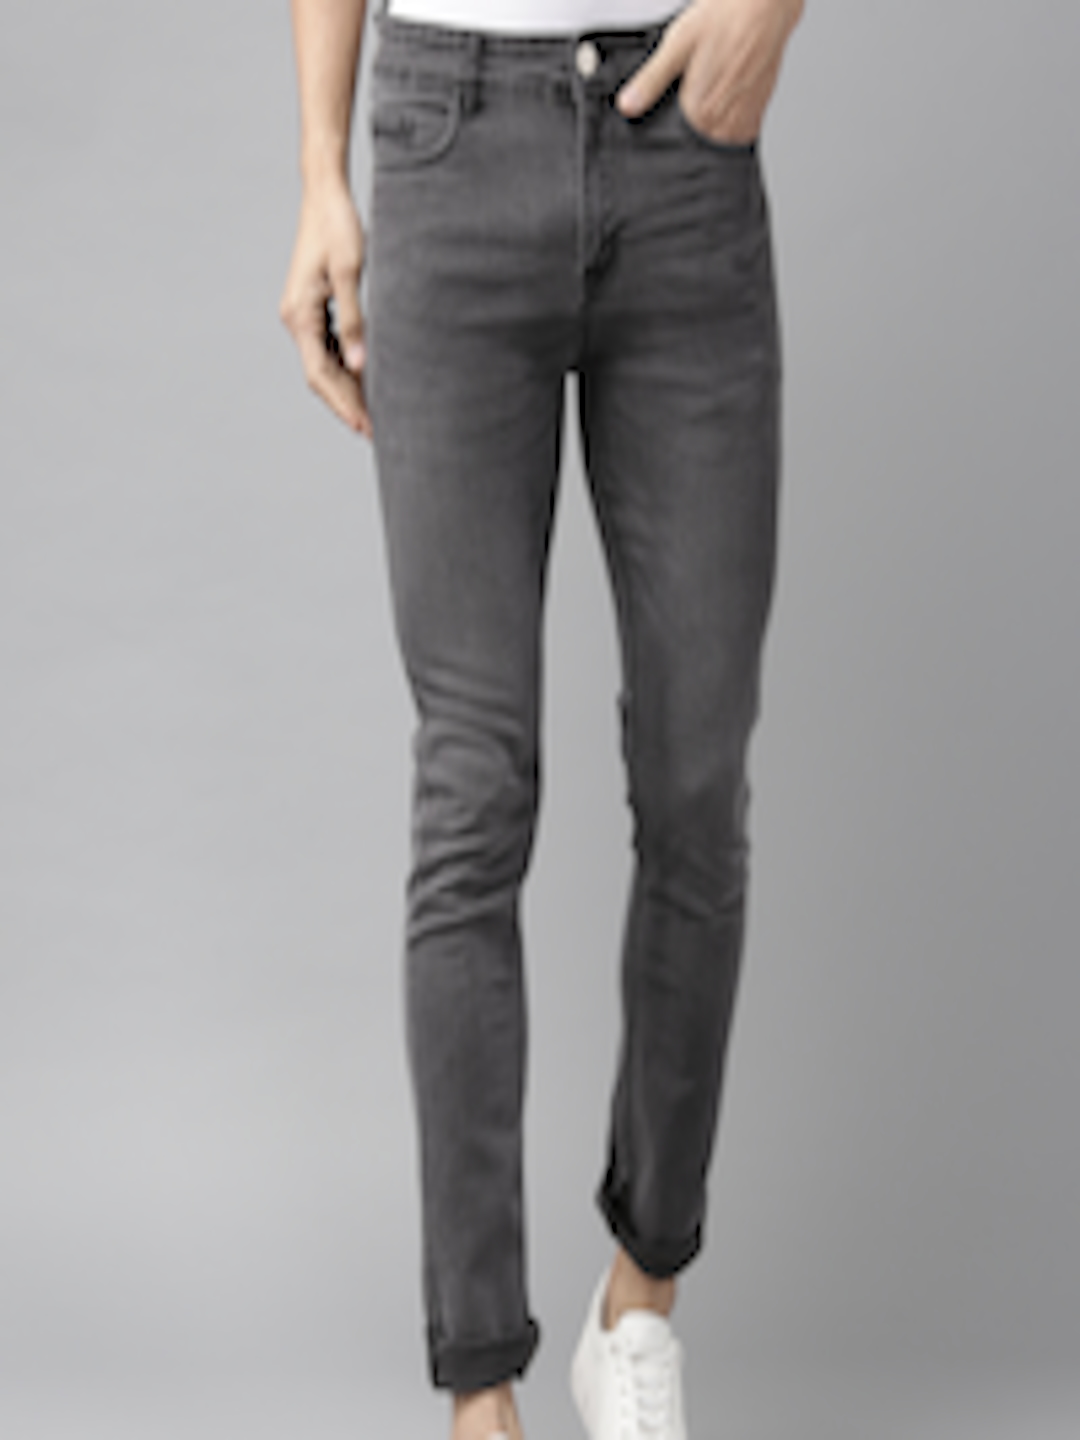 Buy Hubberholme Men Charcoal Grey Slim Fit Mid Rise Clean Look Jeans ...